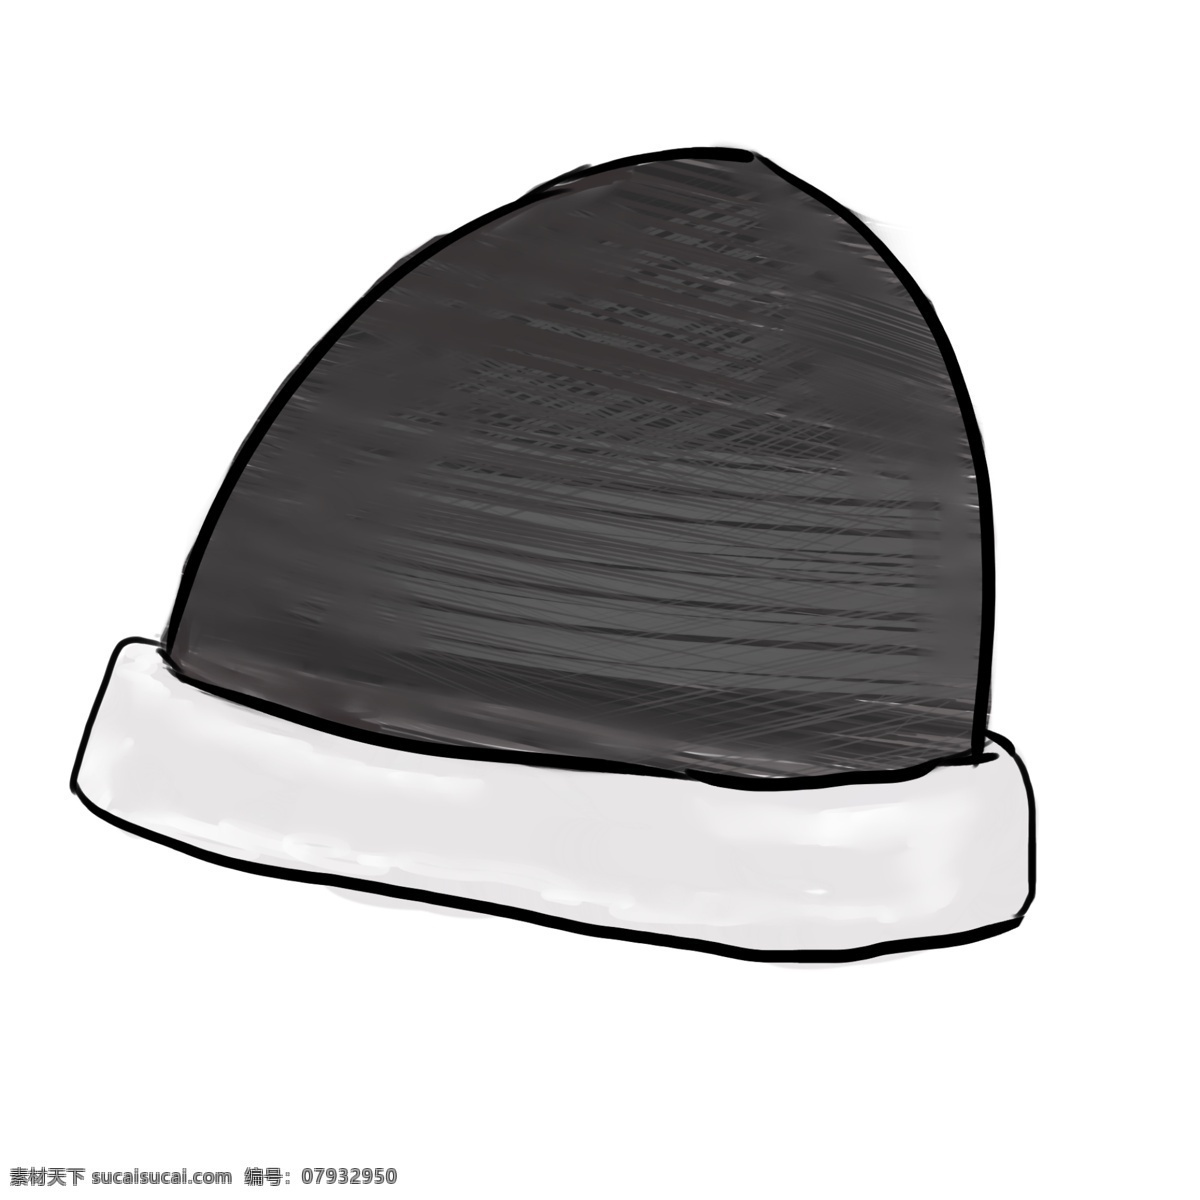 黑色 针织 帽子 插画 黑色的帽子 卡通插画 帽子插画 装饰帽子 遮阳帽子 取暖帽子 针织的帽子